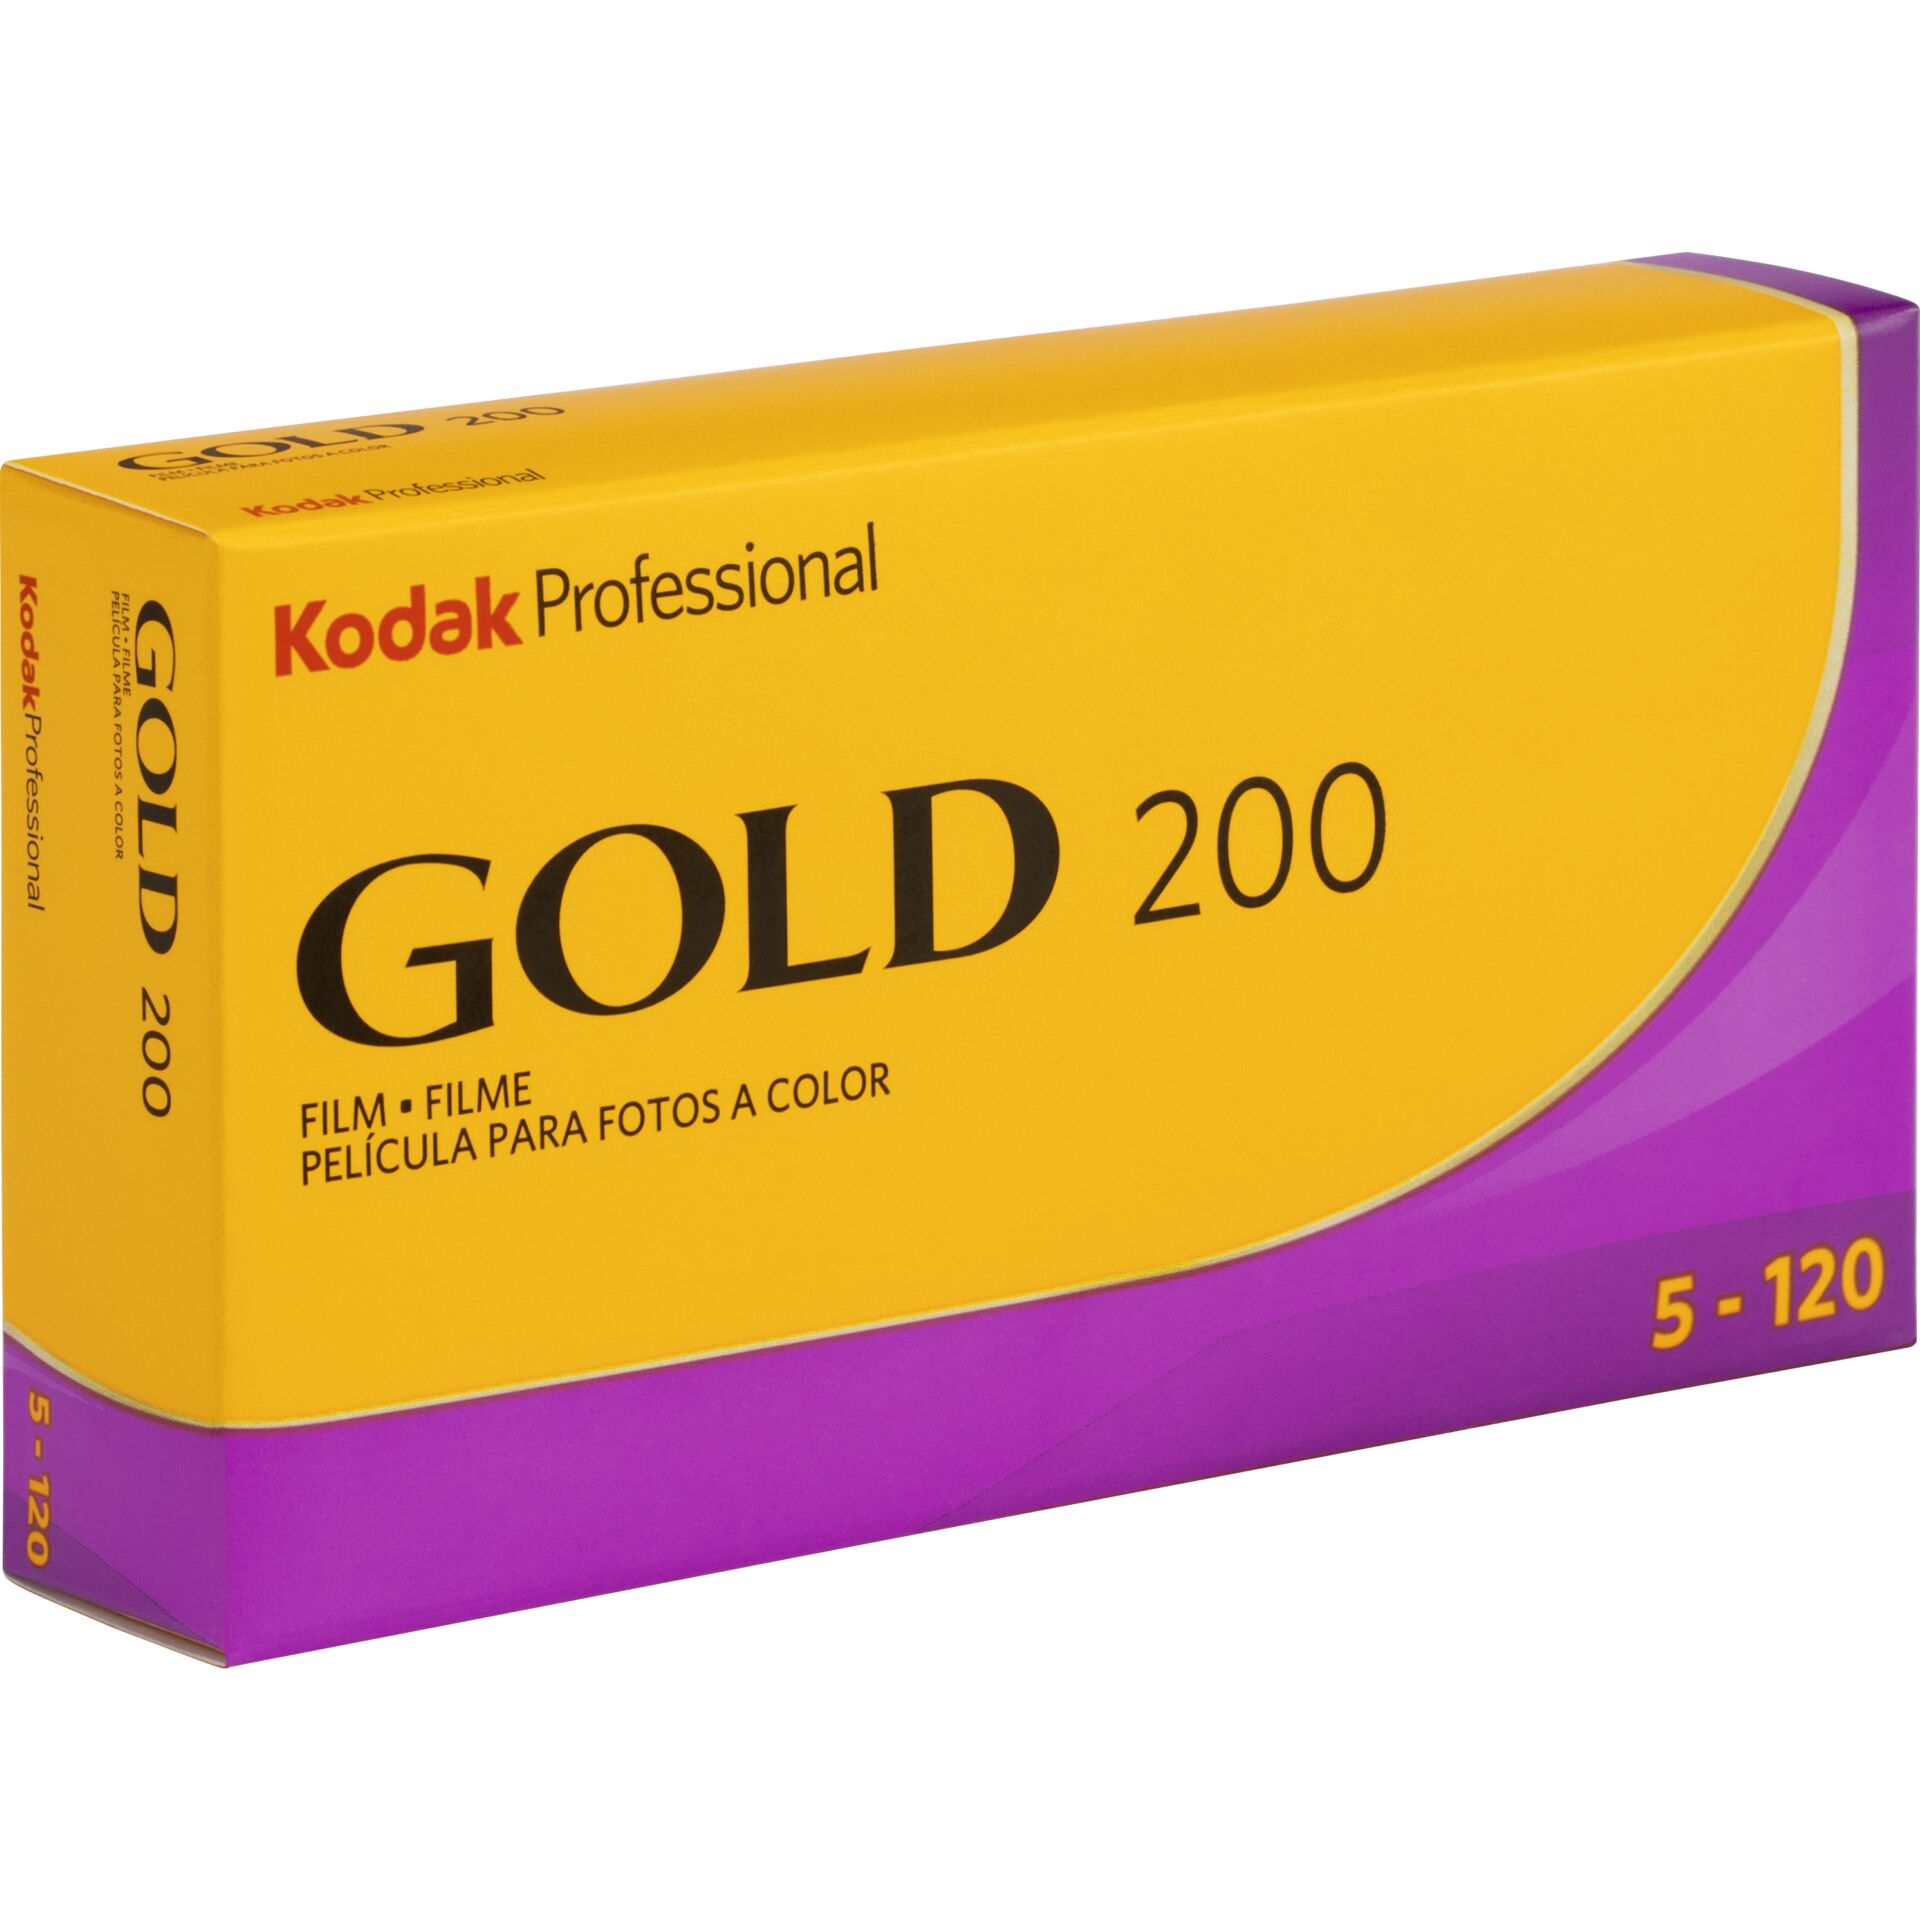 Kodak Gold Professional 200 120 1x5